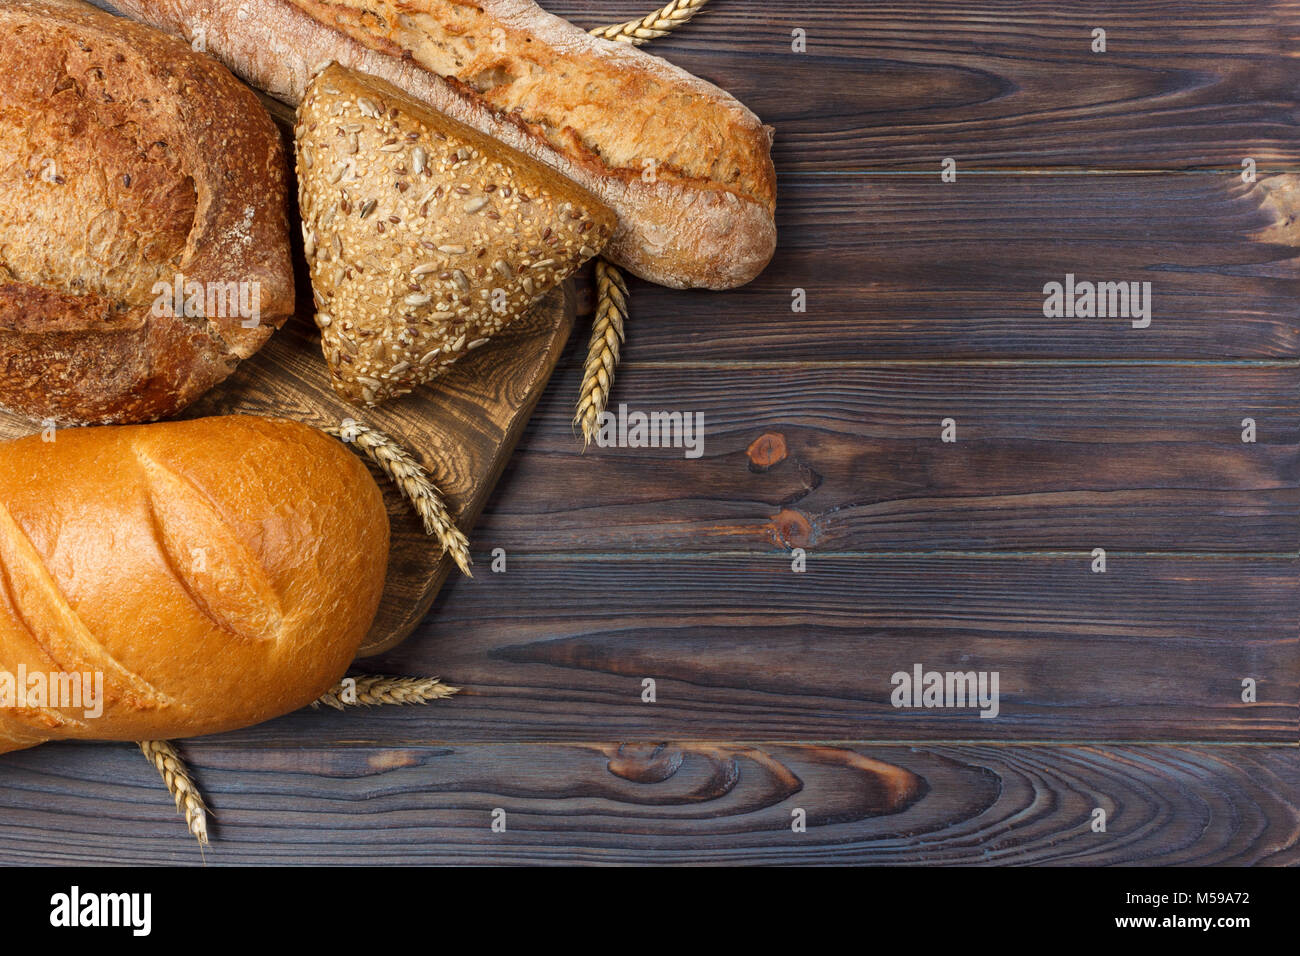 Pain maison cuit au four à pain de blé sur fond de bois. Vue de dessus avec l'exemplaire de l'espace. Banque D'Images